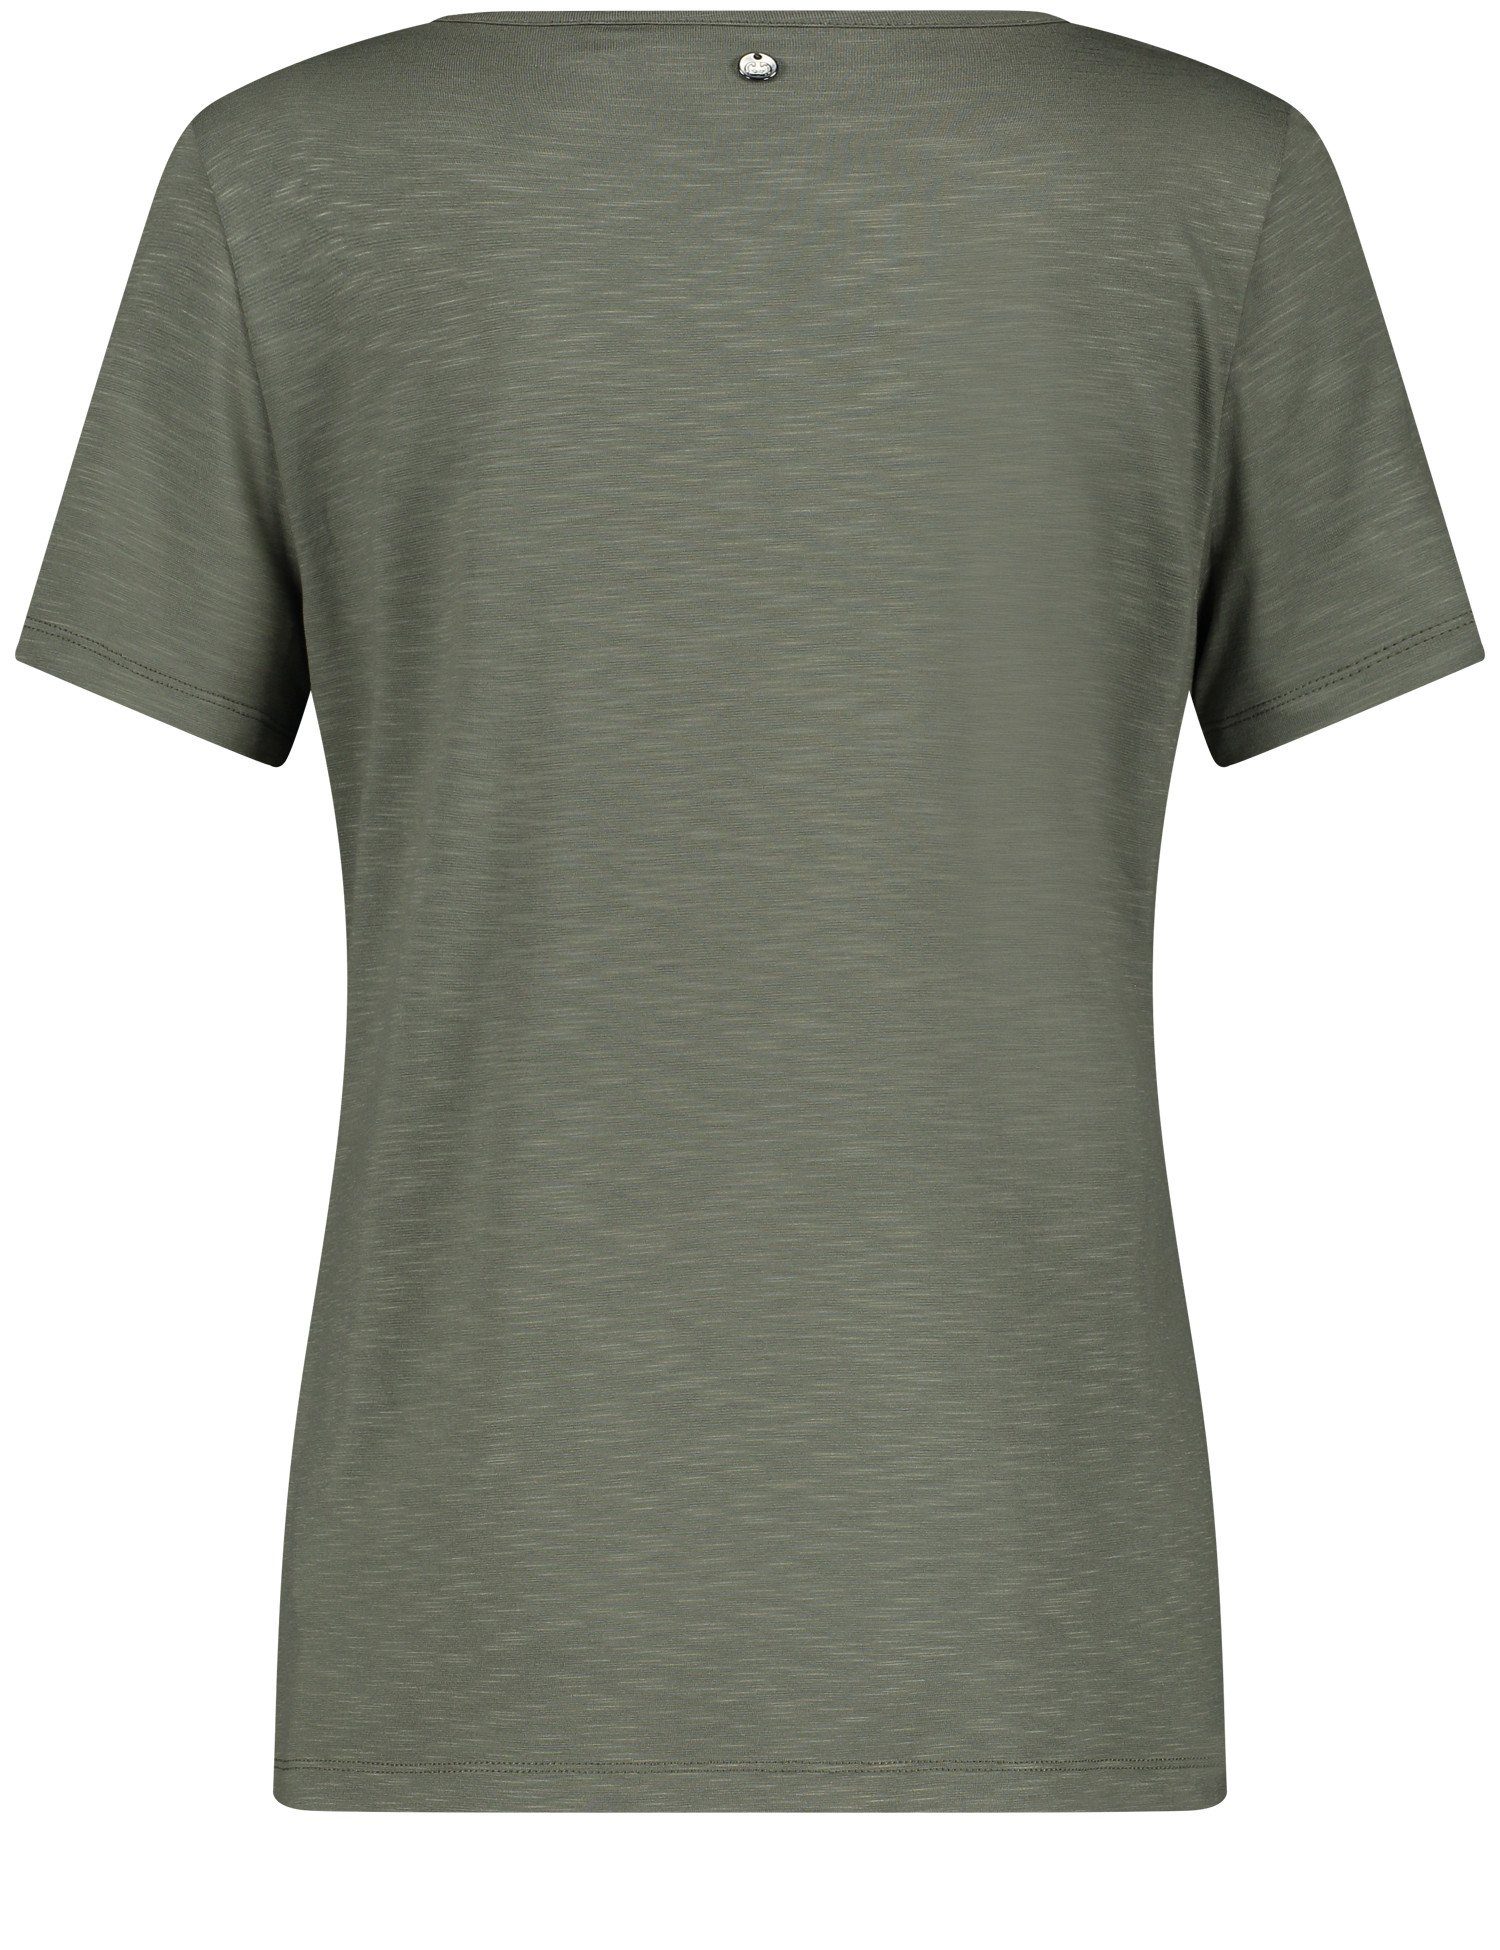 Tropfenauschnitt Kurzarmshirt WEBER GERRY mit Olive geknöpftem T-Shirt